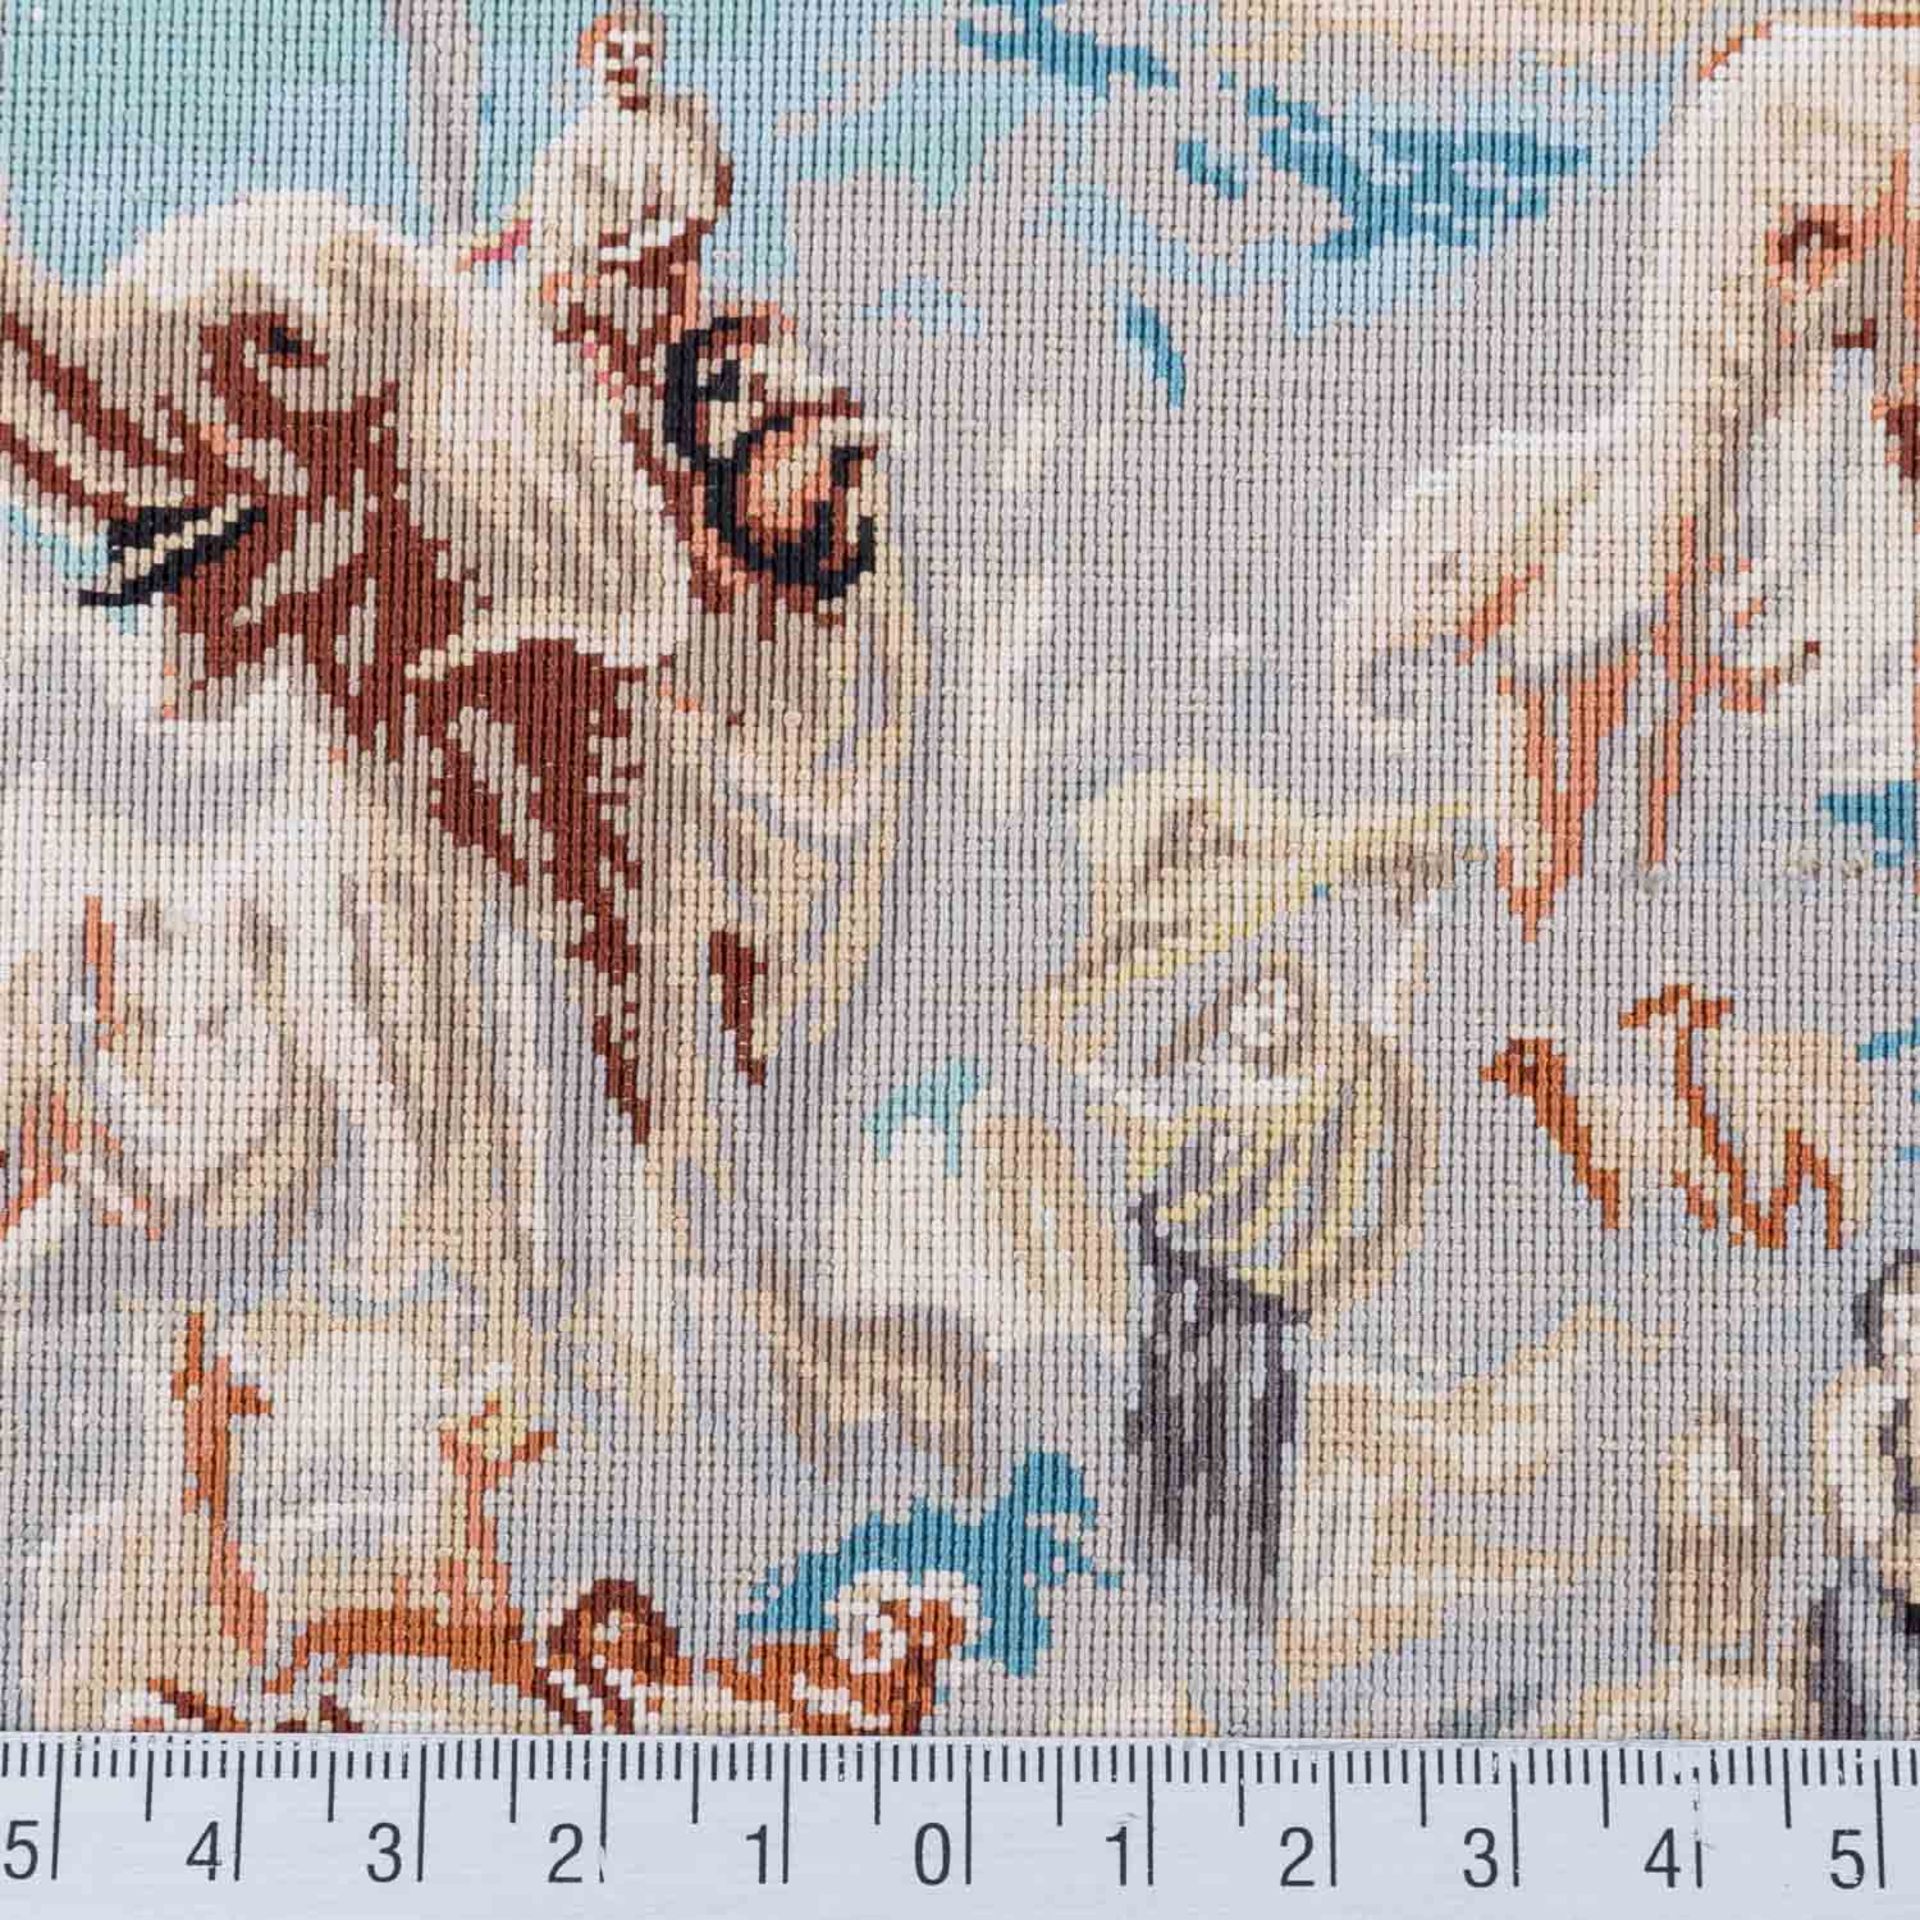 Bildteppich "Arche Noah" aus Seide. HEREKE/TÜRKEI, 20. Jh., 40x63 cm. - Bild 6 aus 6